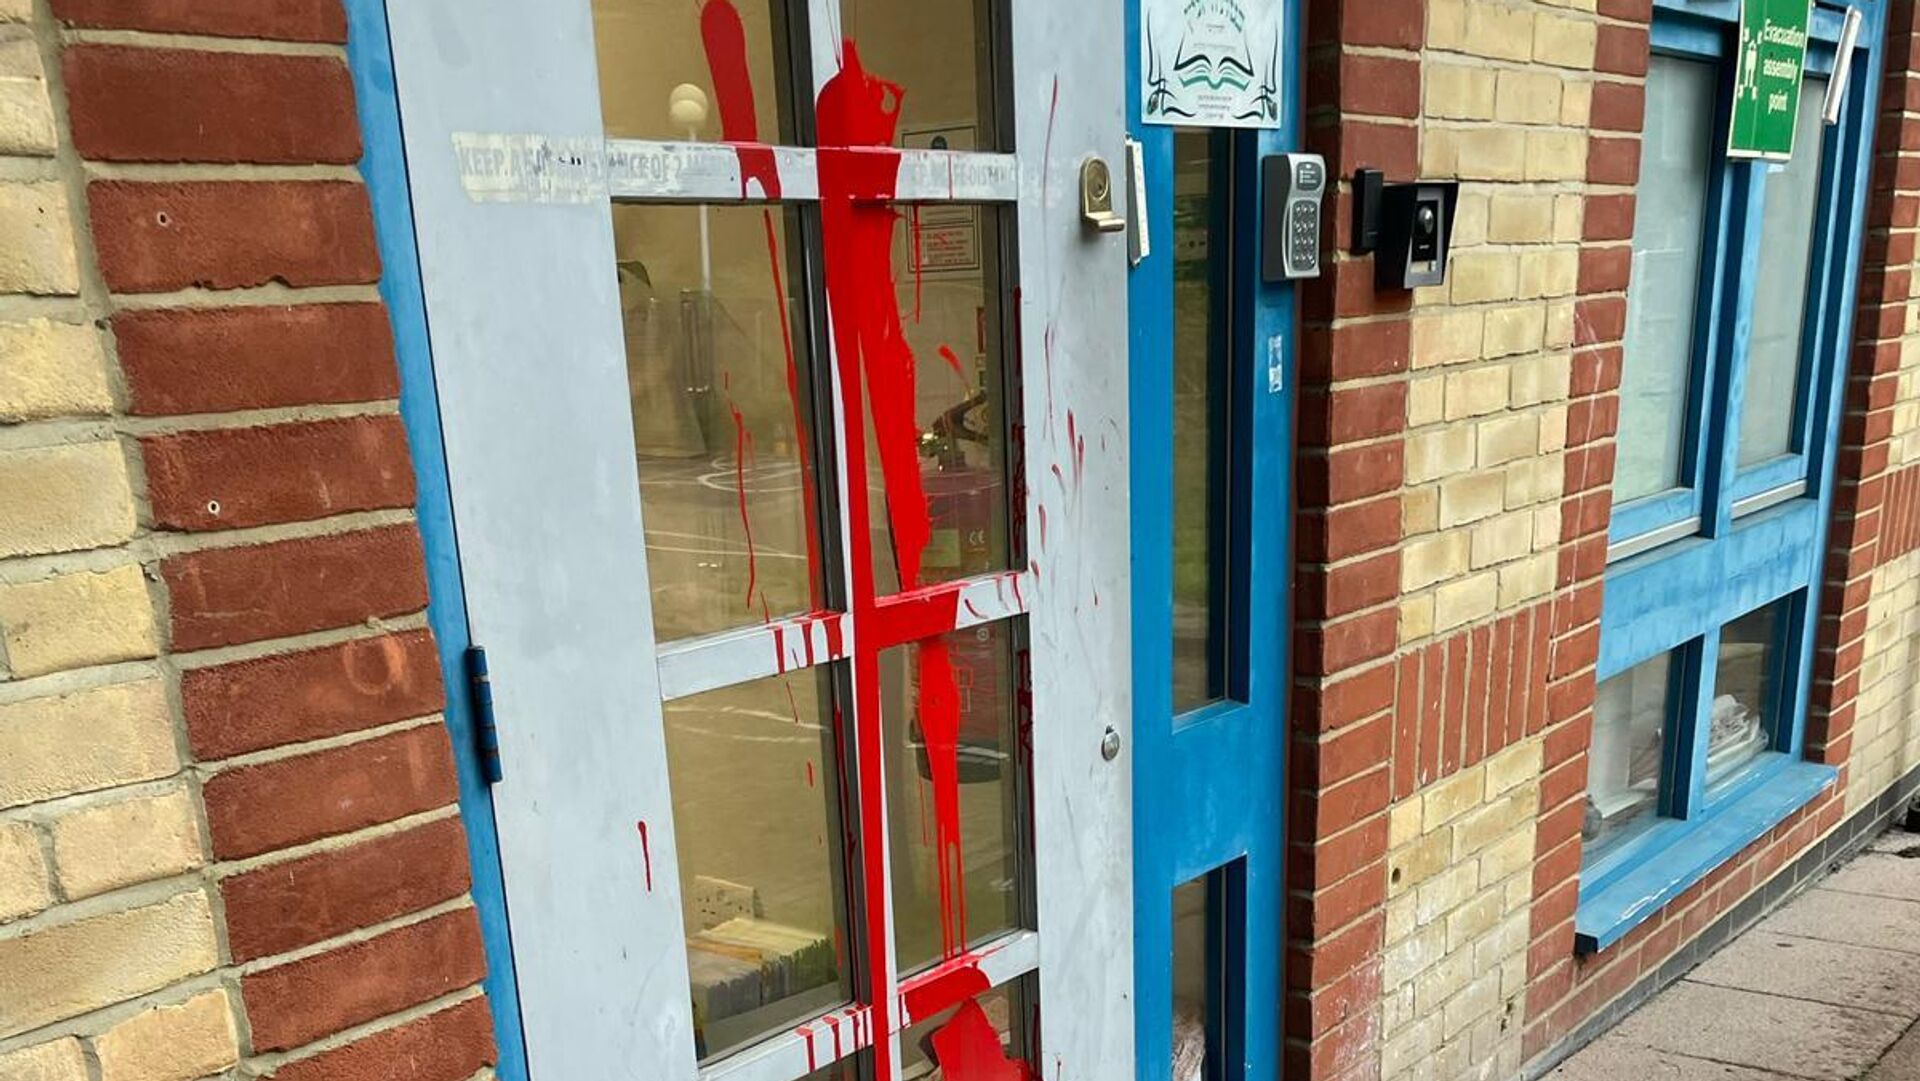 Двери еврейской школы в Лондоне, облитые красной краской. 16 октября 2023 - РИА Новости, 1920, 16.10.2023